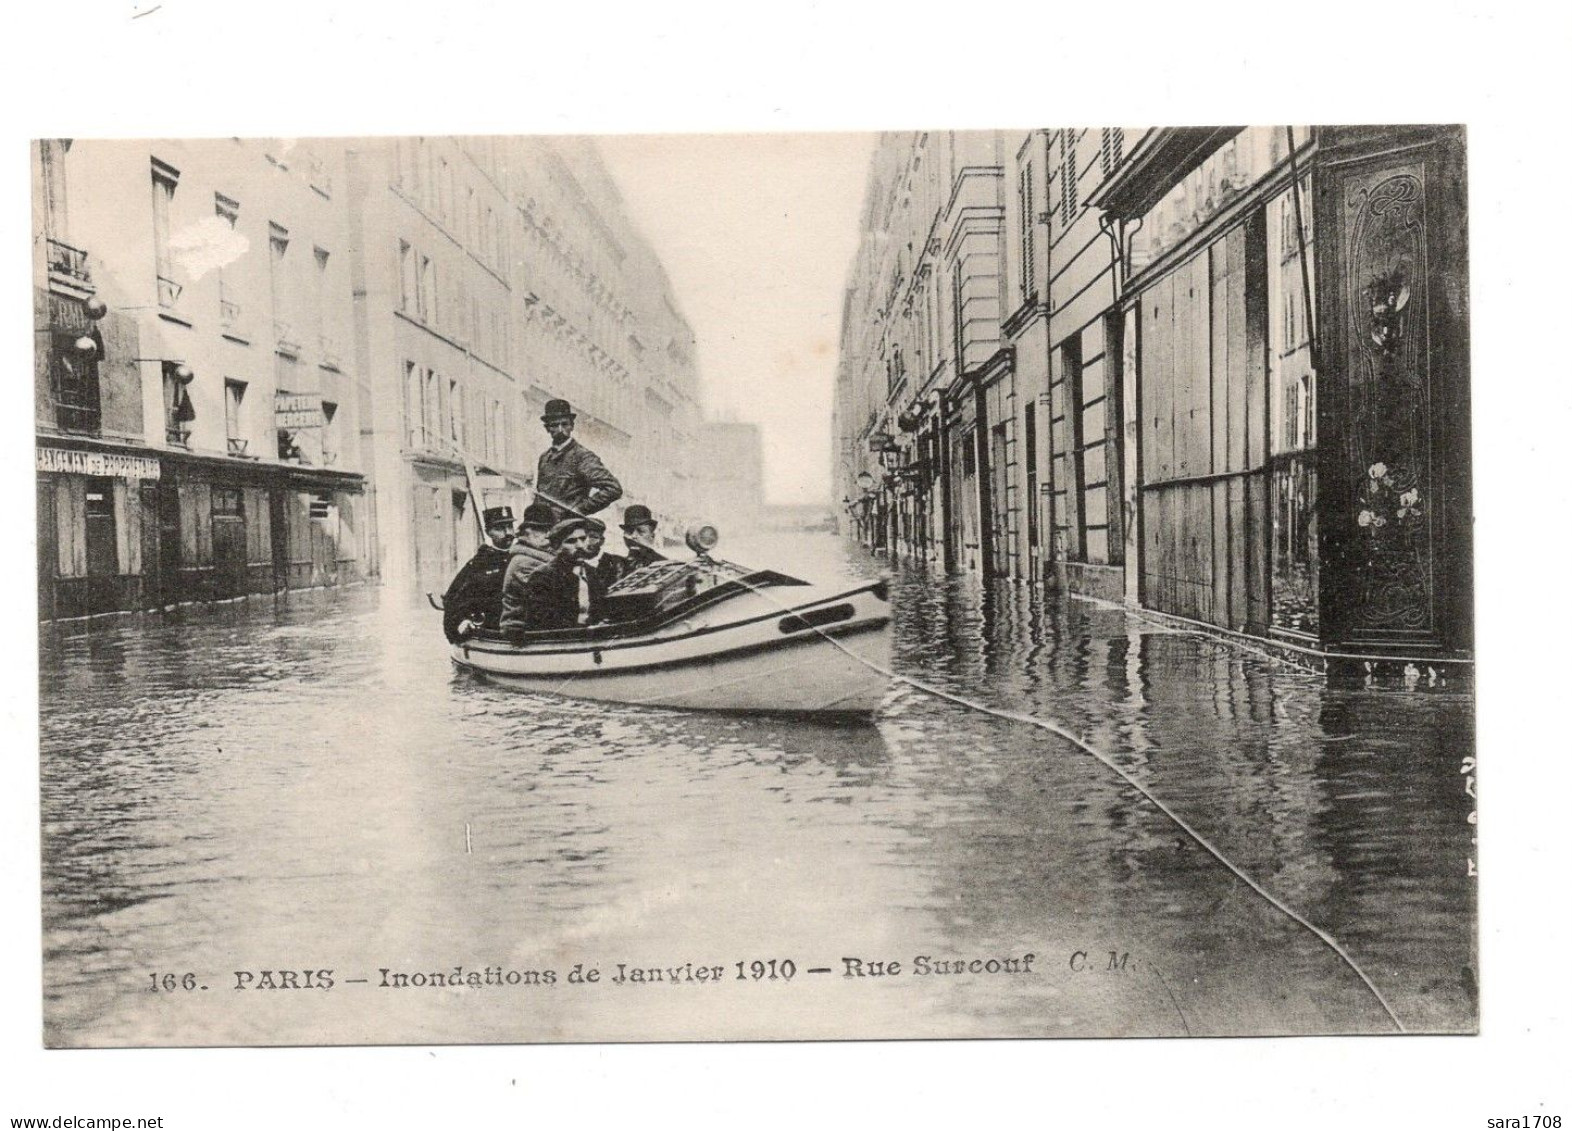 PARIS, Inondations De 1910. Rue Surcouf. N° 166. - Paris Flood, 1910